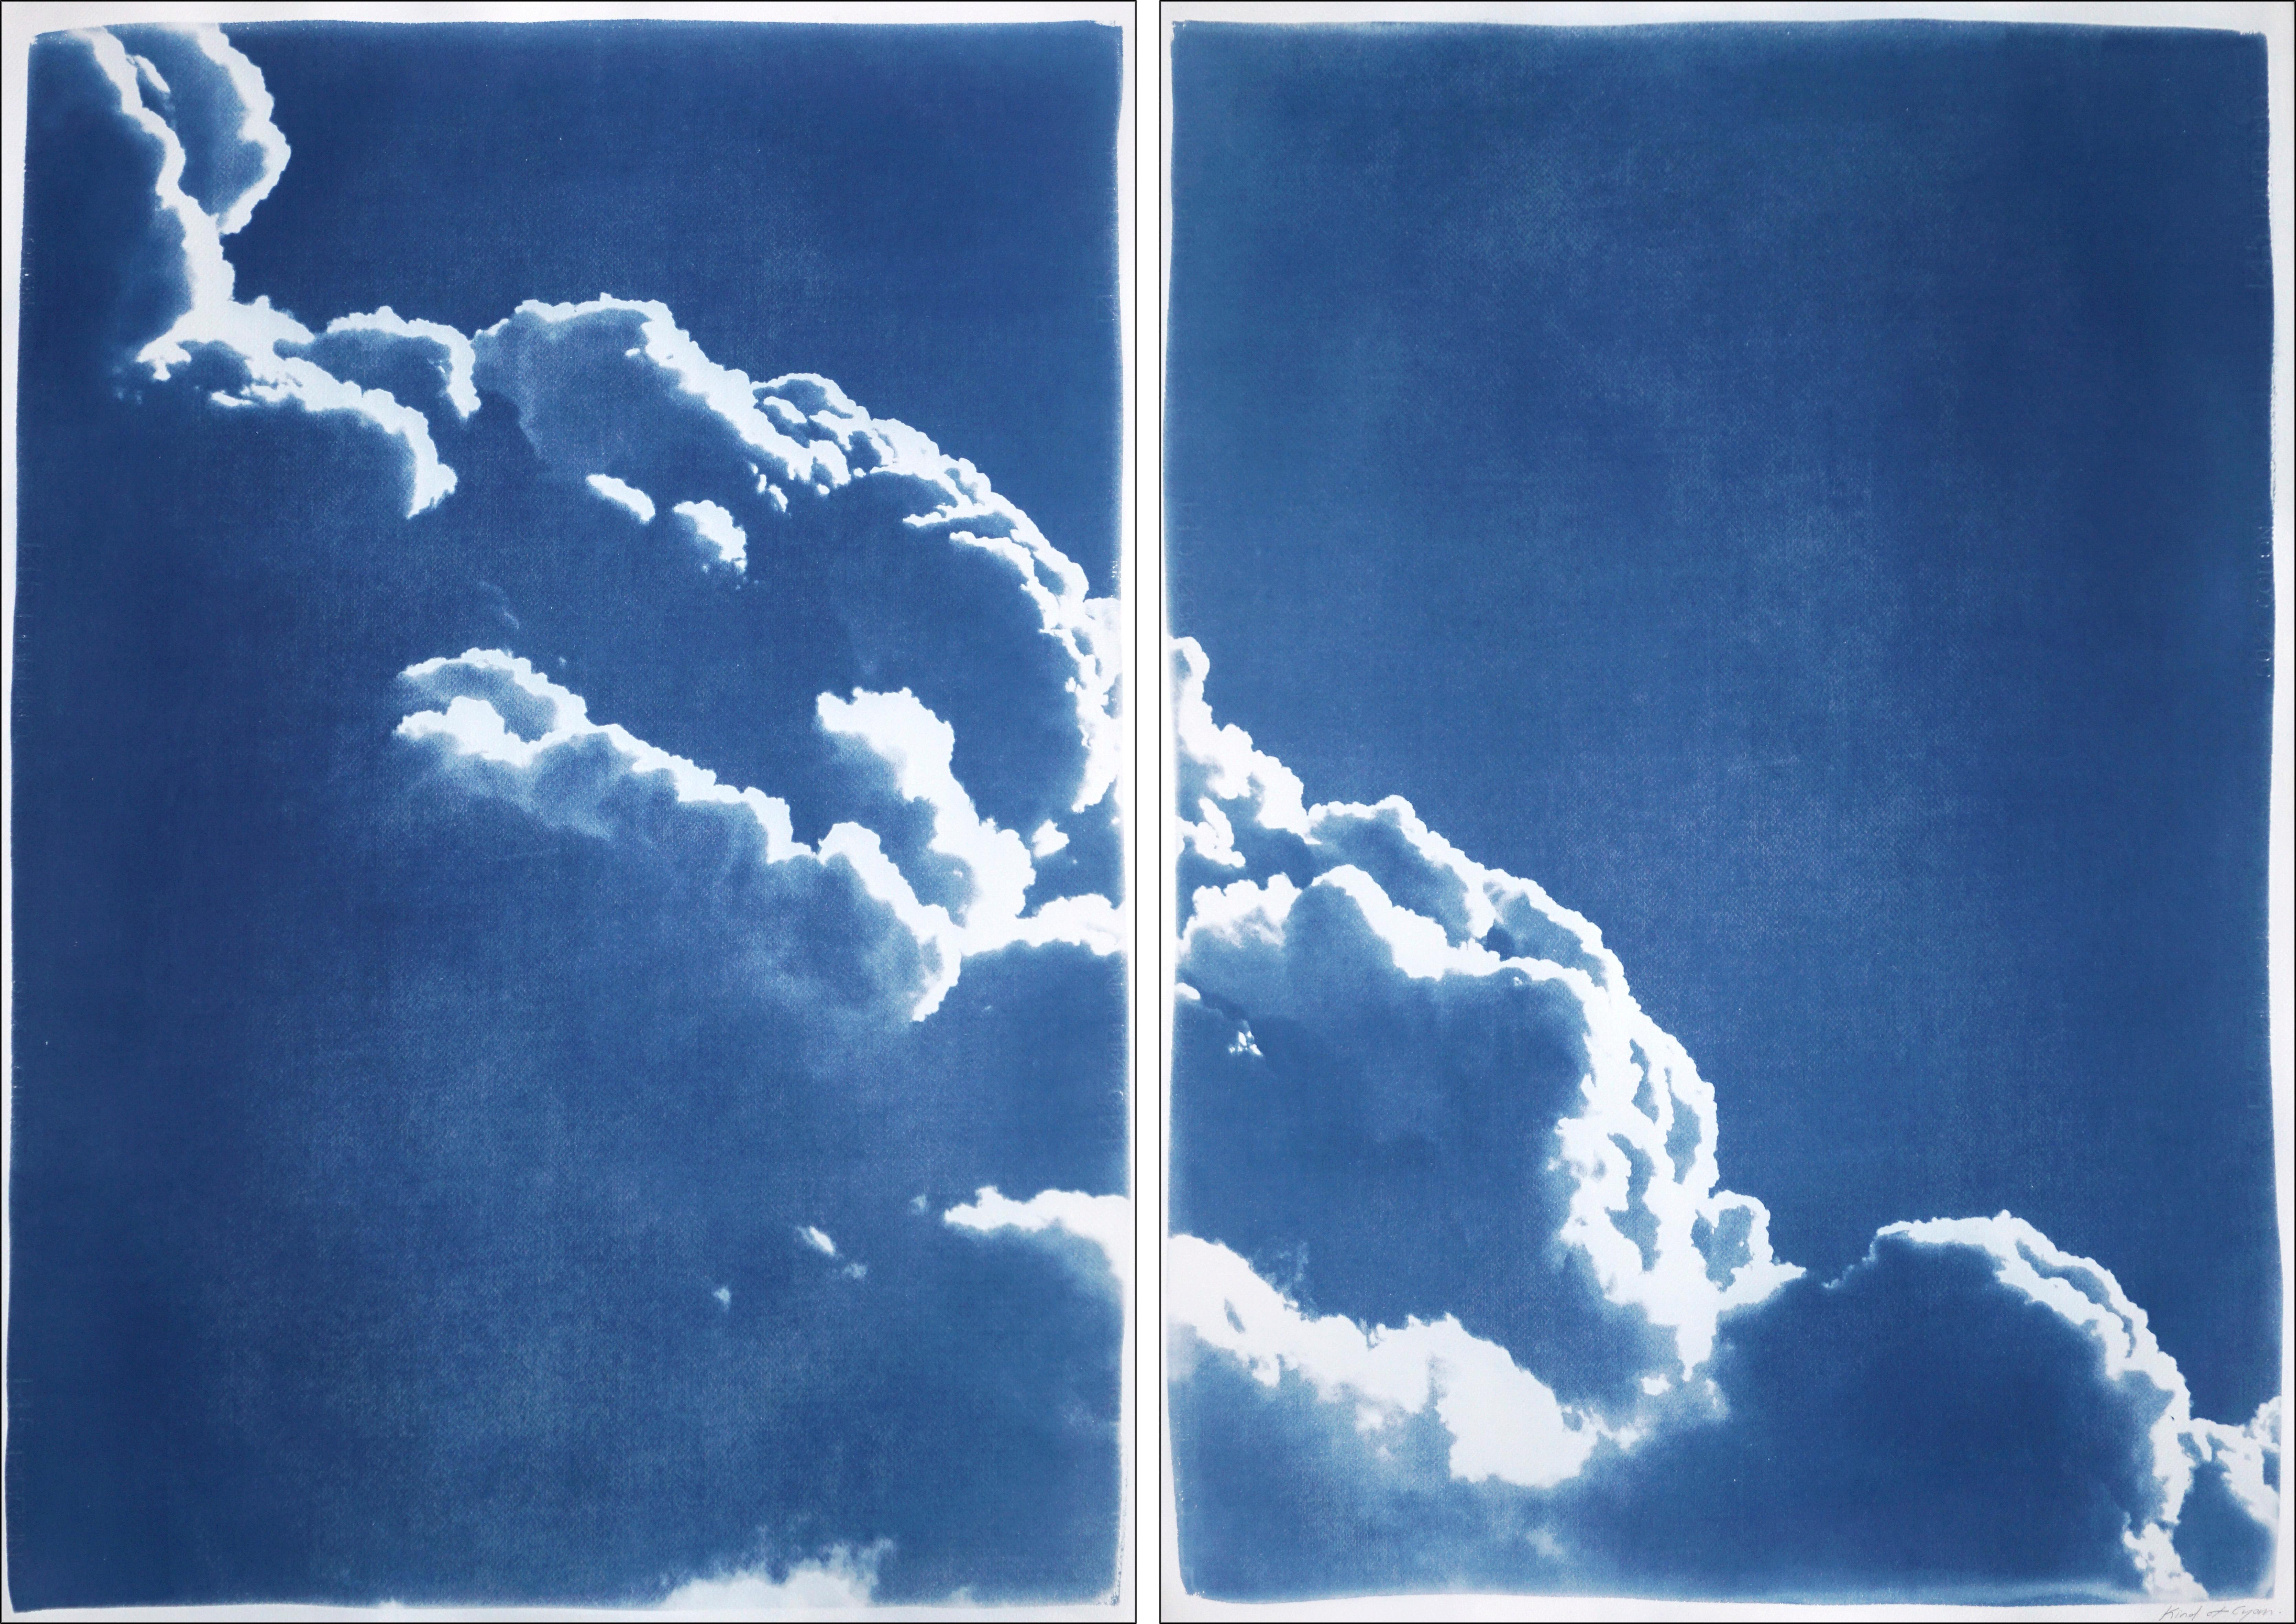 Diptychon aus schwebenden Wolken, blaue Töne Himmelssszene, Zyanotyp-Druck in seidenformen